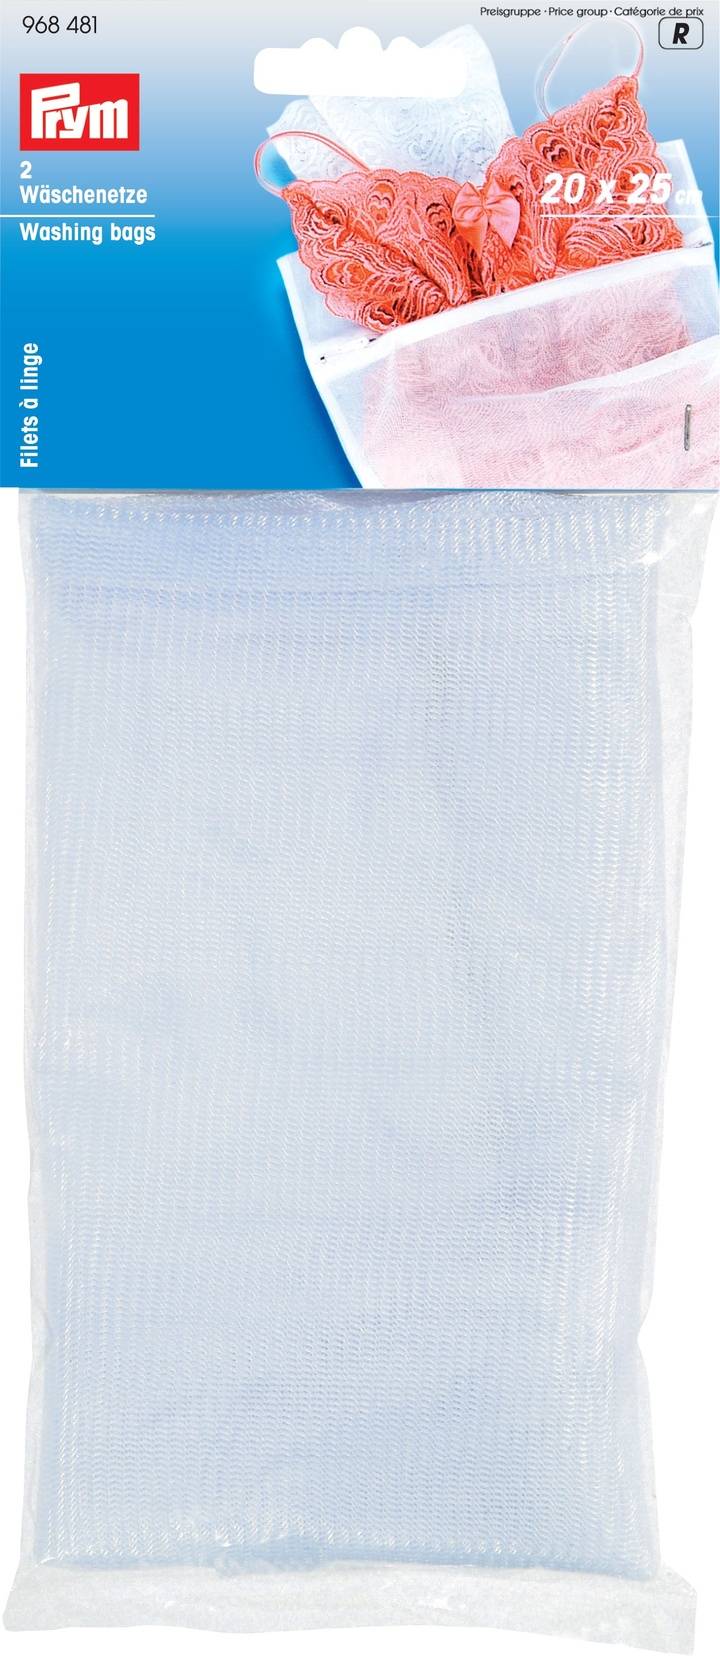 Мешок для стирки белья, 20 x 25 см, белого цвета